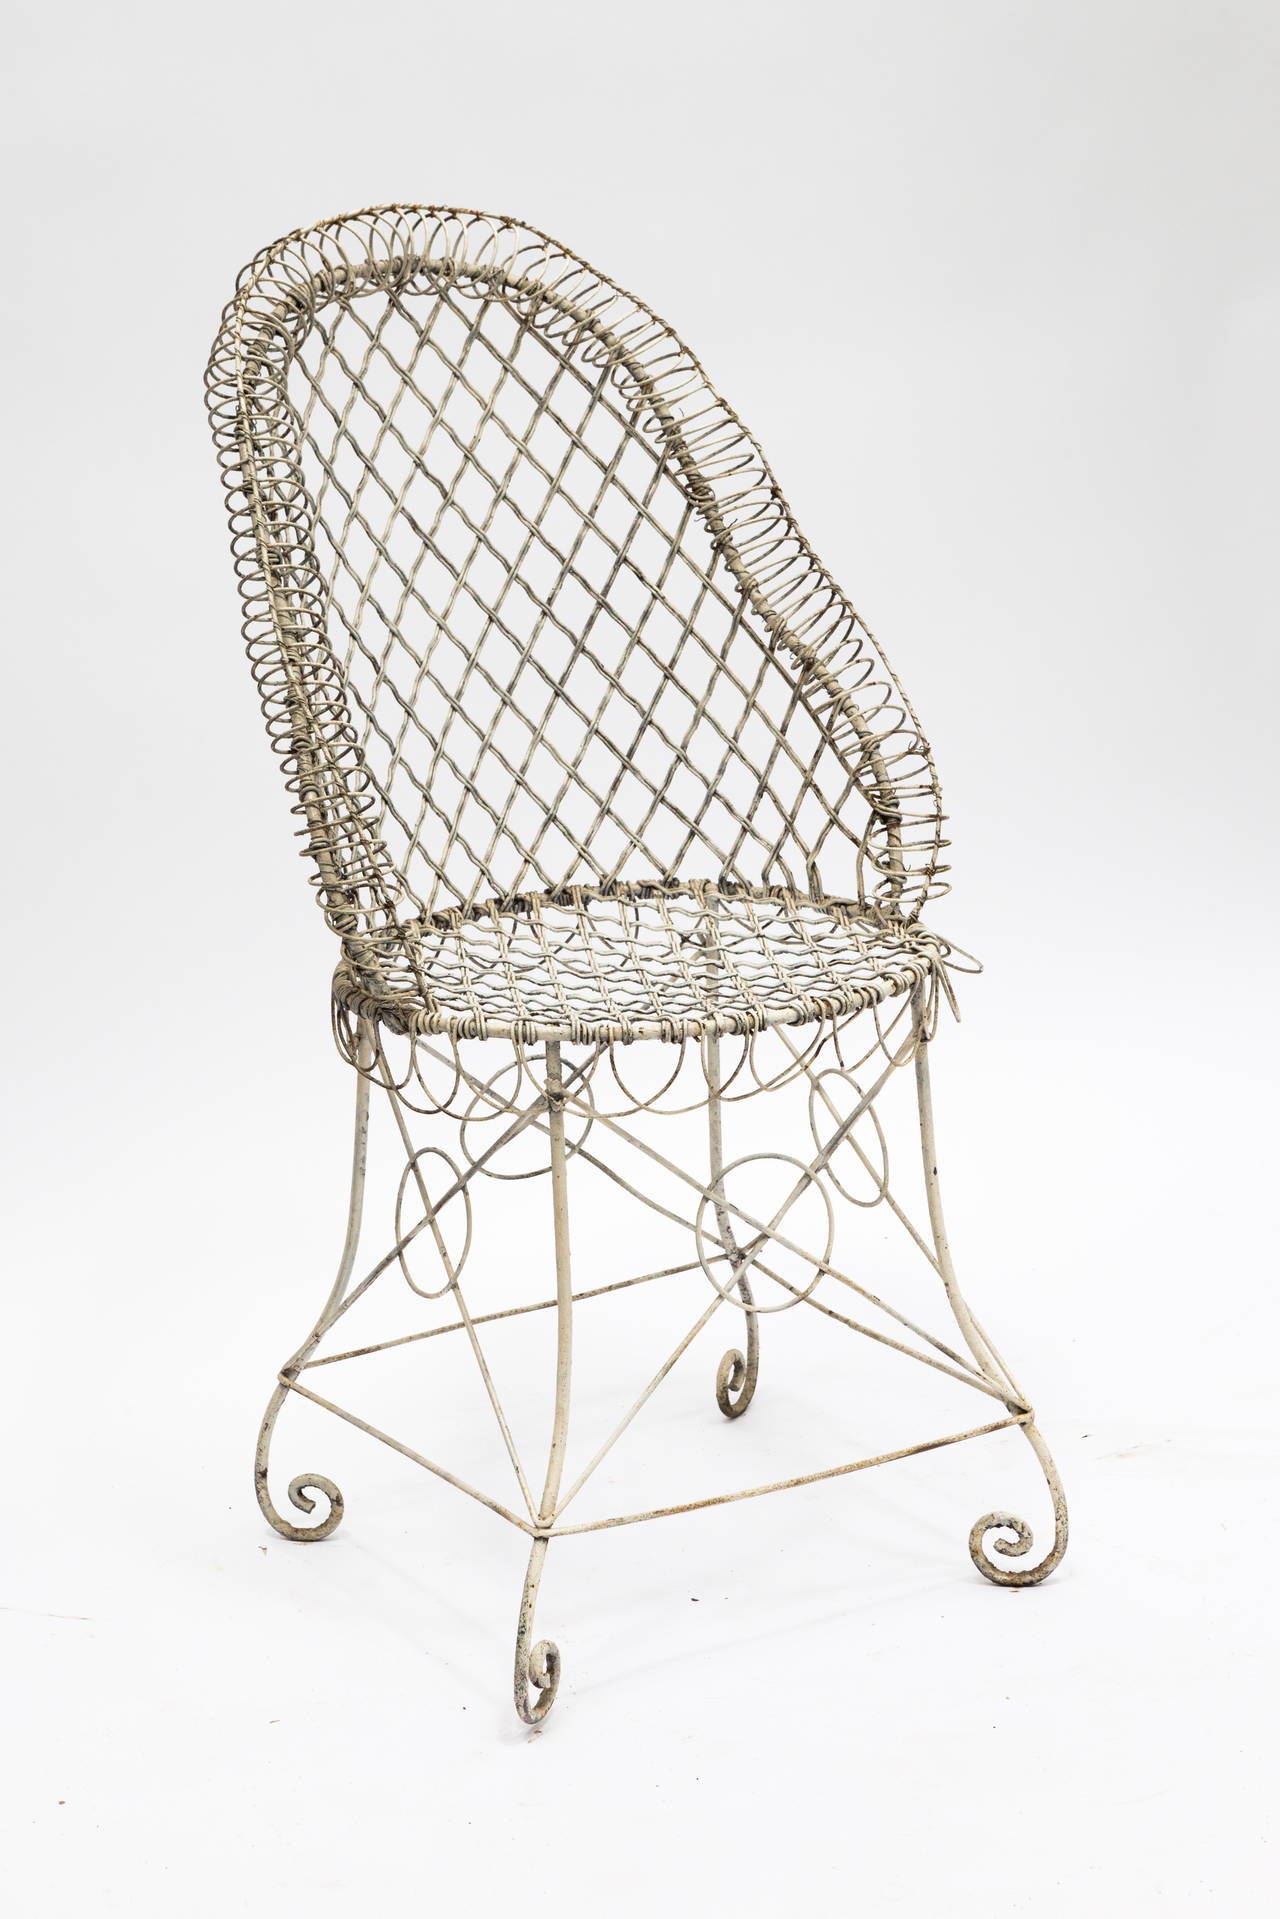 Garden wire chair.